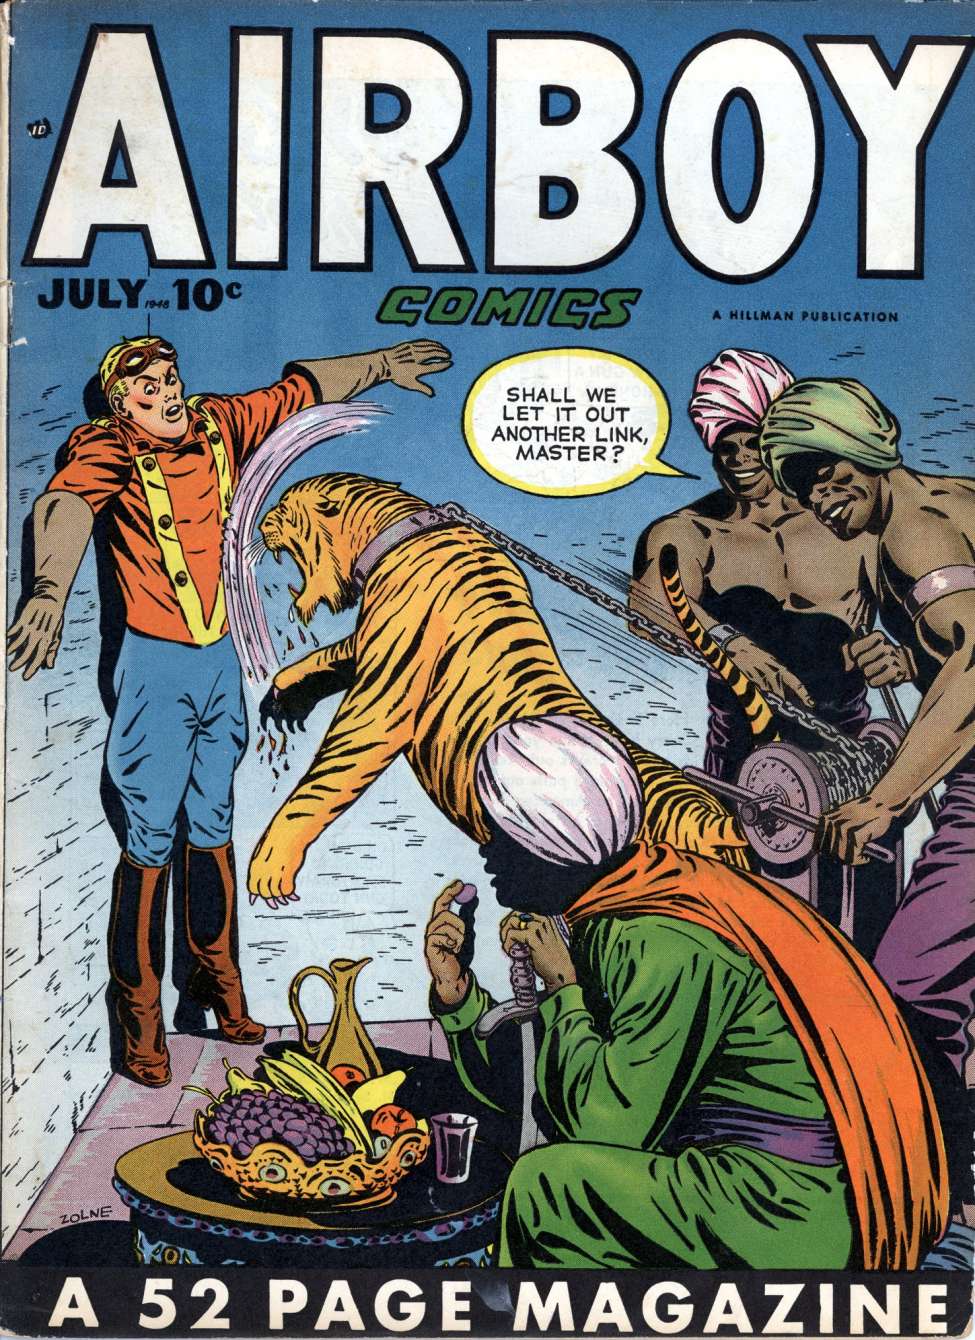 Book Cover For Airboy Comics v5 6 (alt)